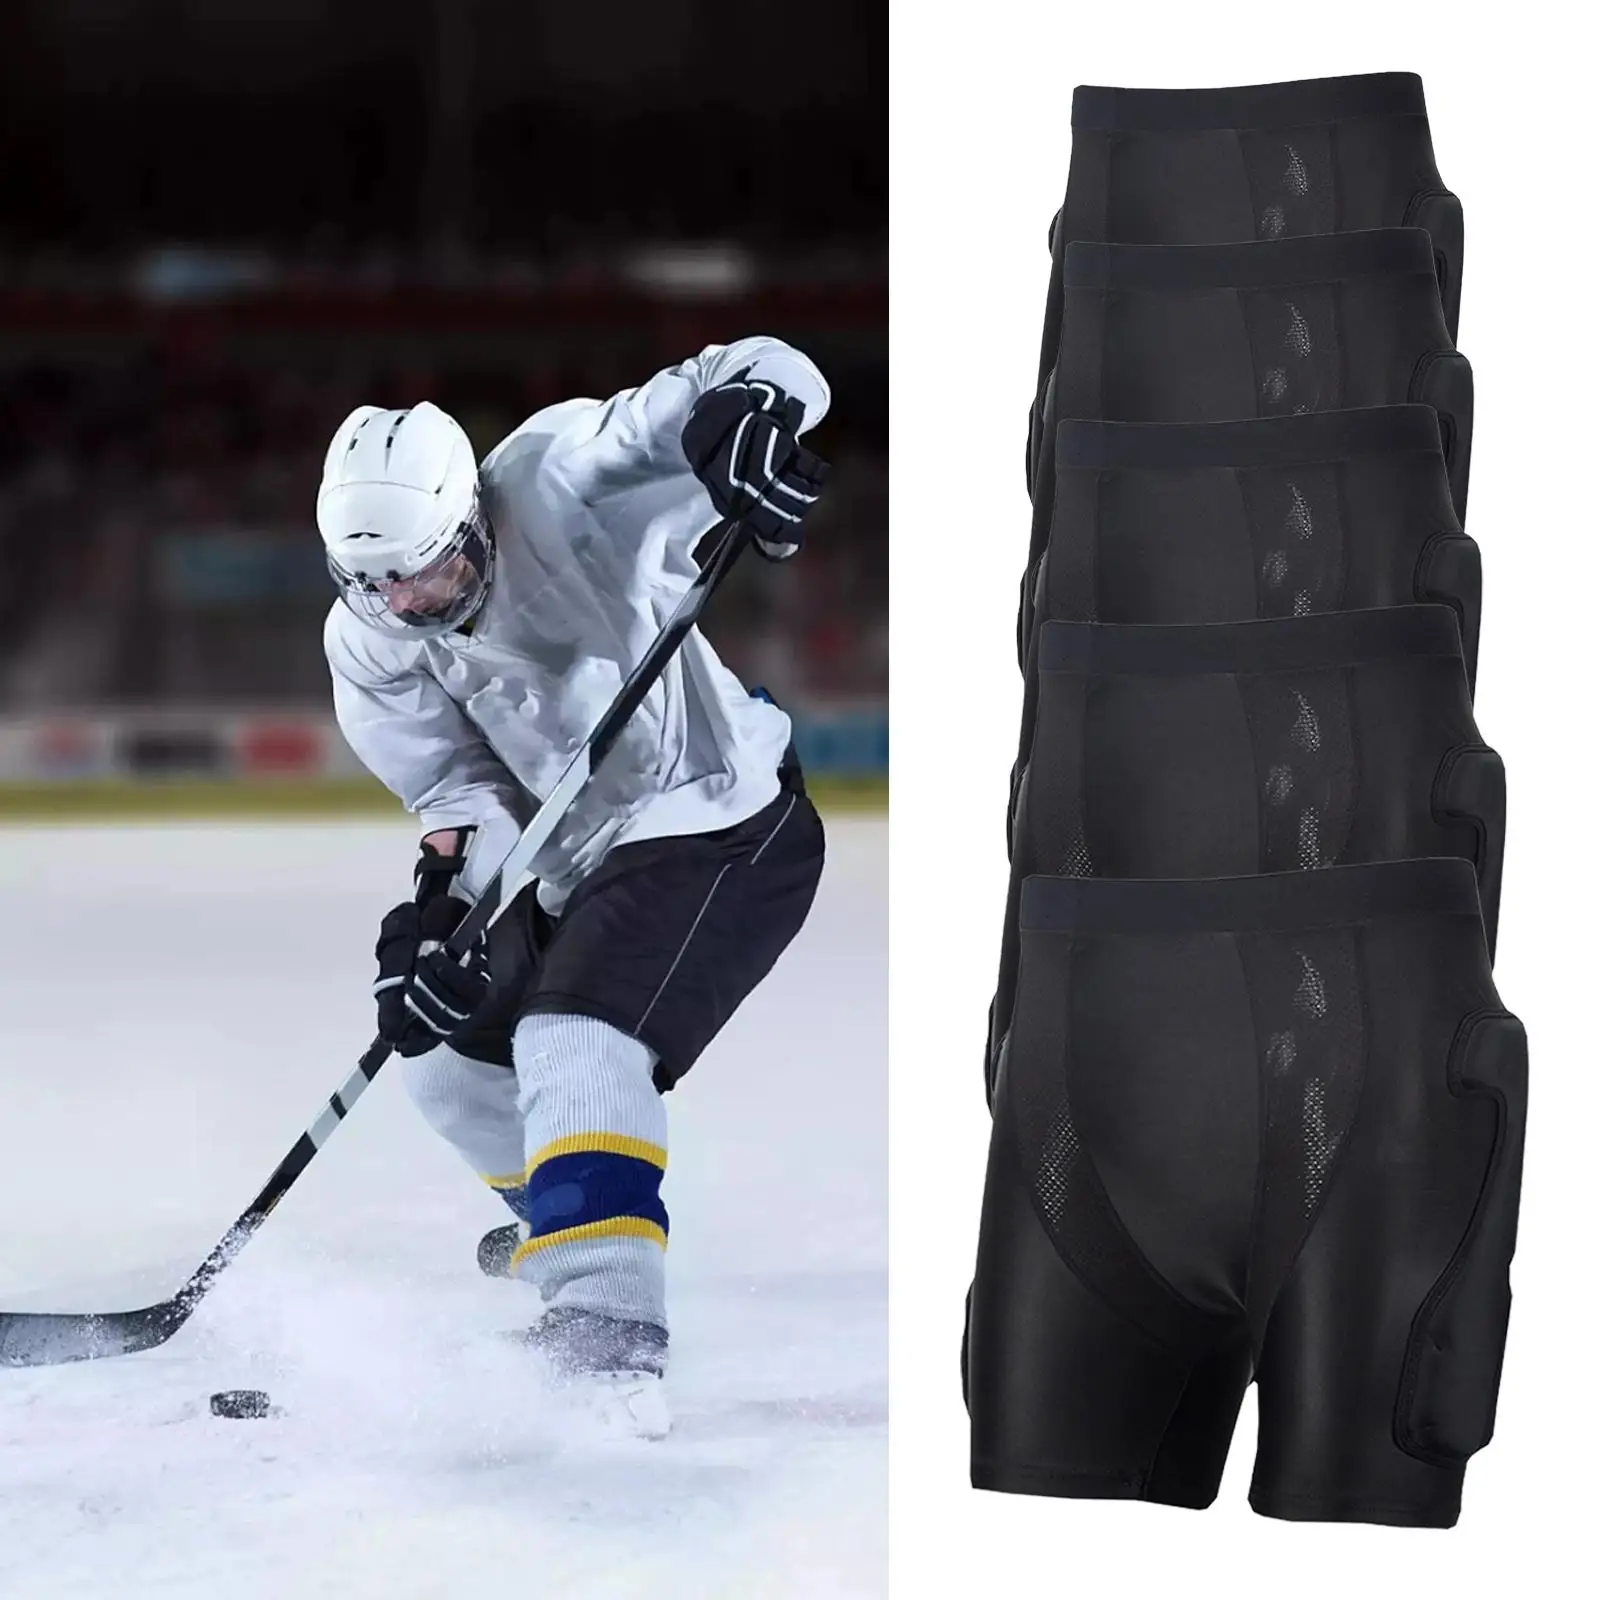 Protective Padded Shorts Skating Ski Hip Pad Protective Gear Pad Pants for Skate Riding Winter Sports Skiing Adults Teens